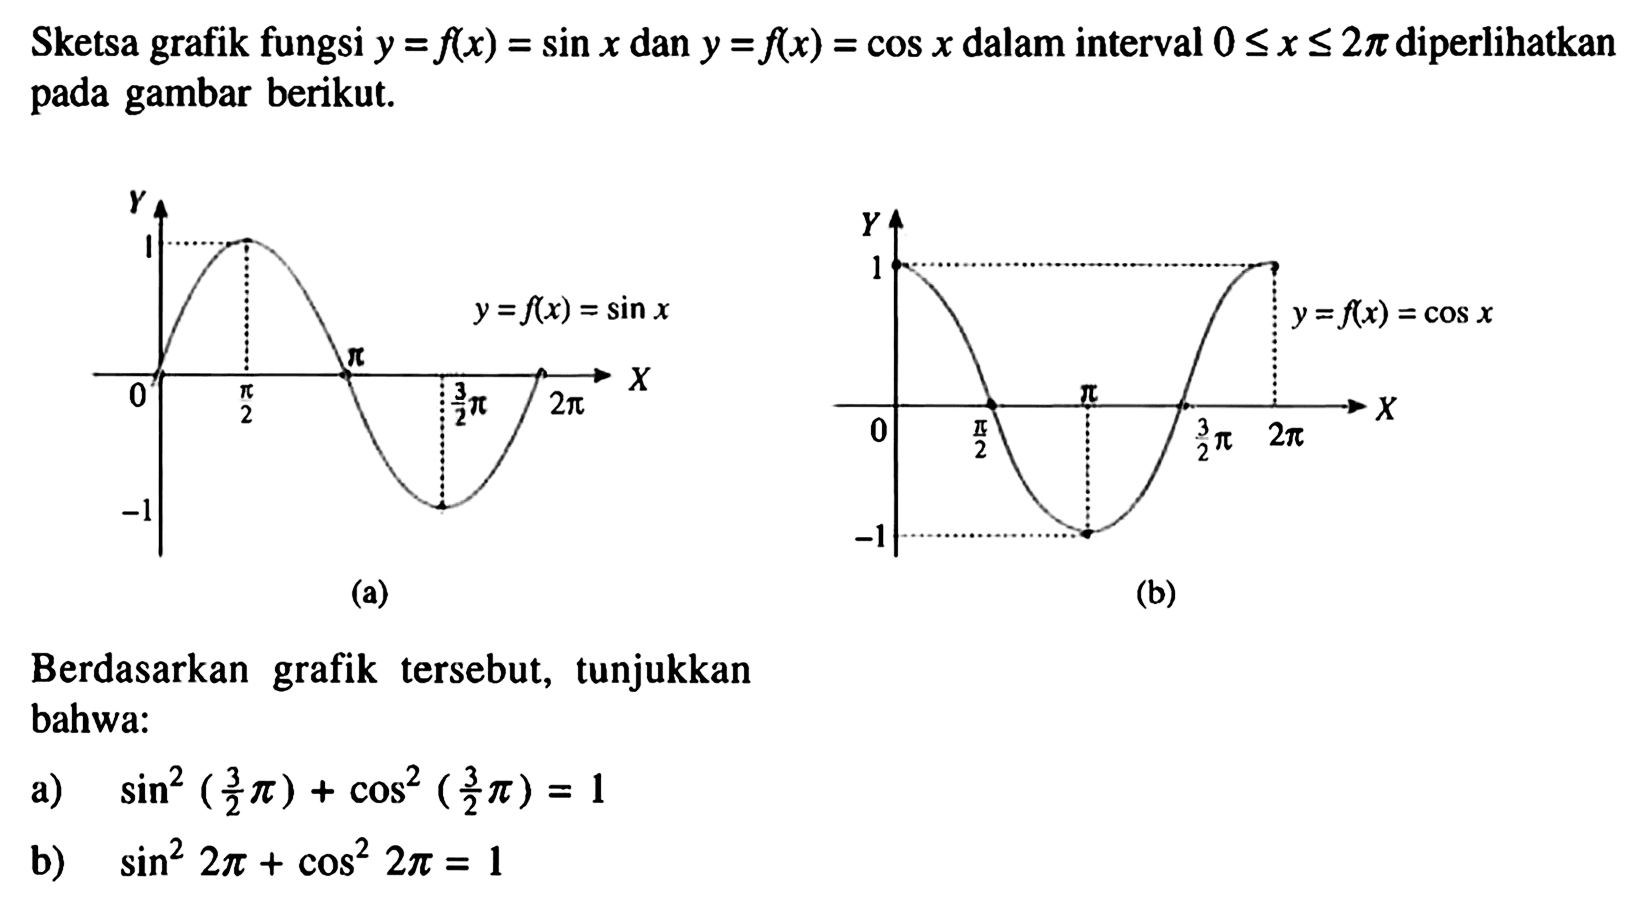 Sketsa grafik fungsi y=f(x)=sinx dan y=f(x)=cosx dalam interval 0<=x<=2pi diperlihatkan pada gambar berikut. y=f(x)=sinx f(x)=cosx Berdasarkan grafik tersebut, tunjukkan bahwa: a) sin^2(3/2 pi)+cos^2(3/2 pi)=1 b) sin^2 2pi+cos^2 2pi=1